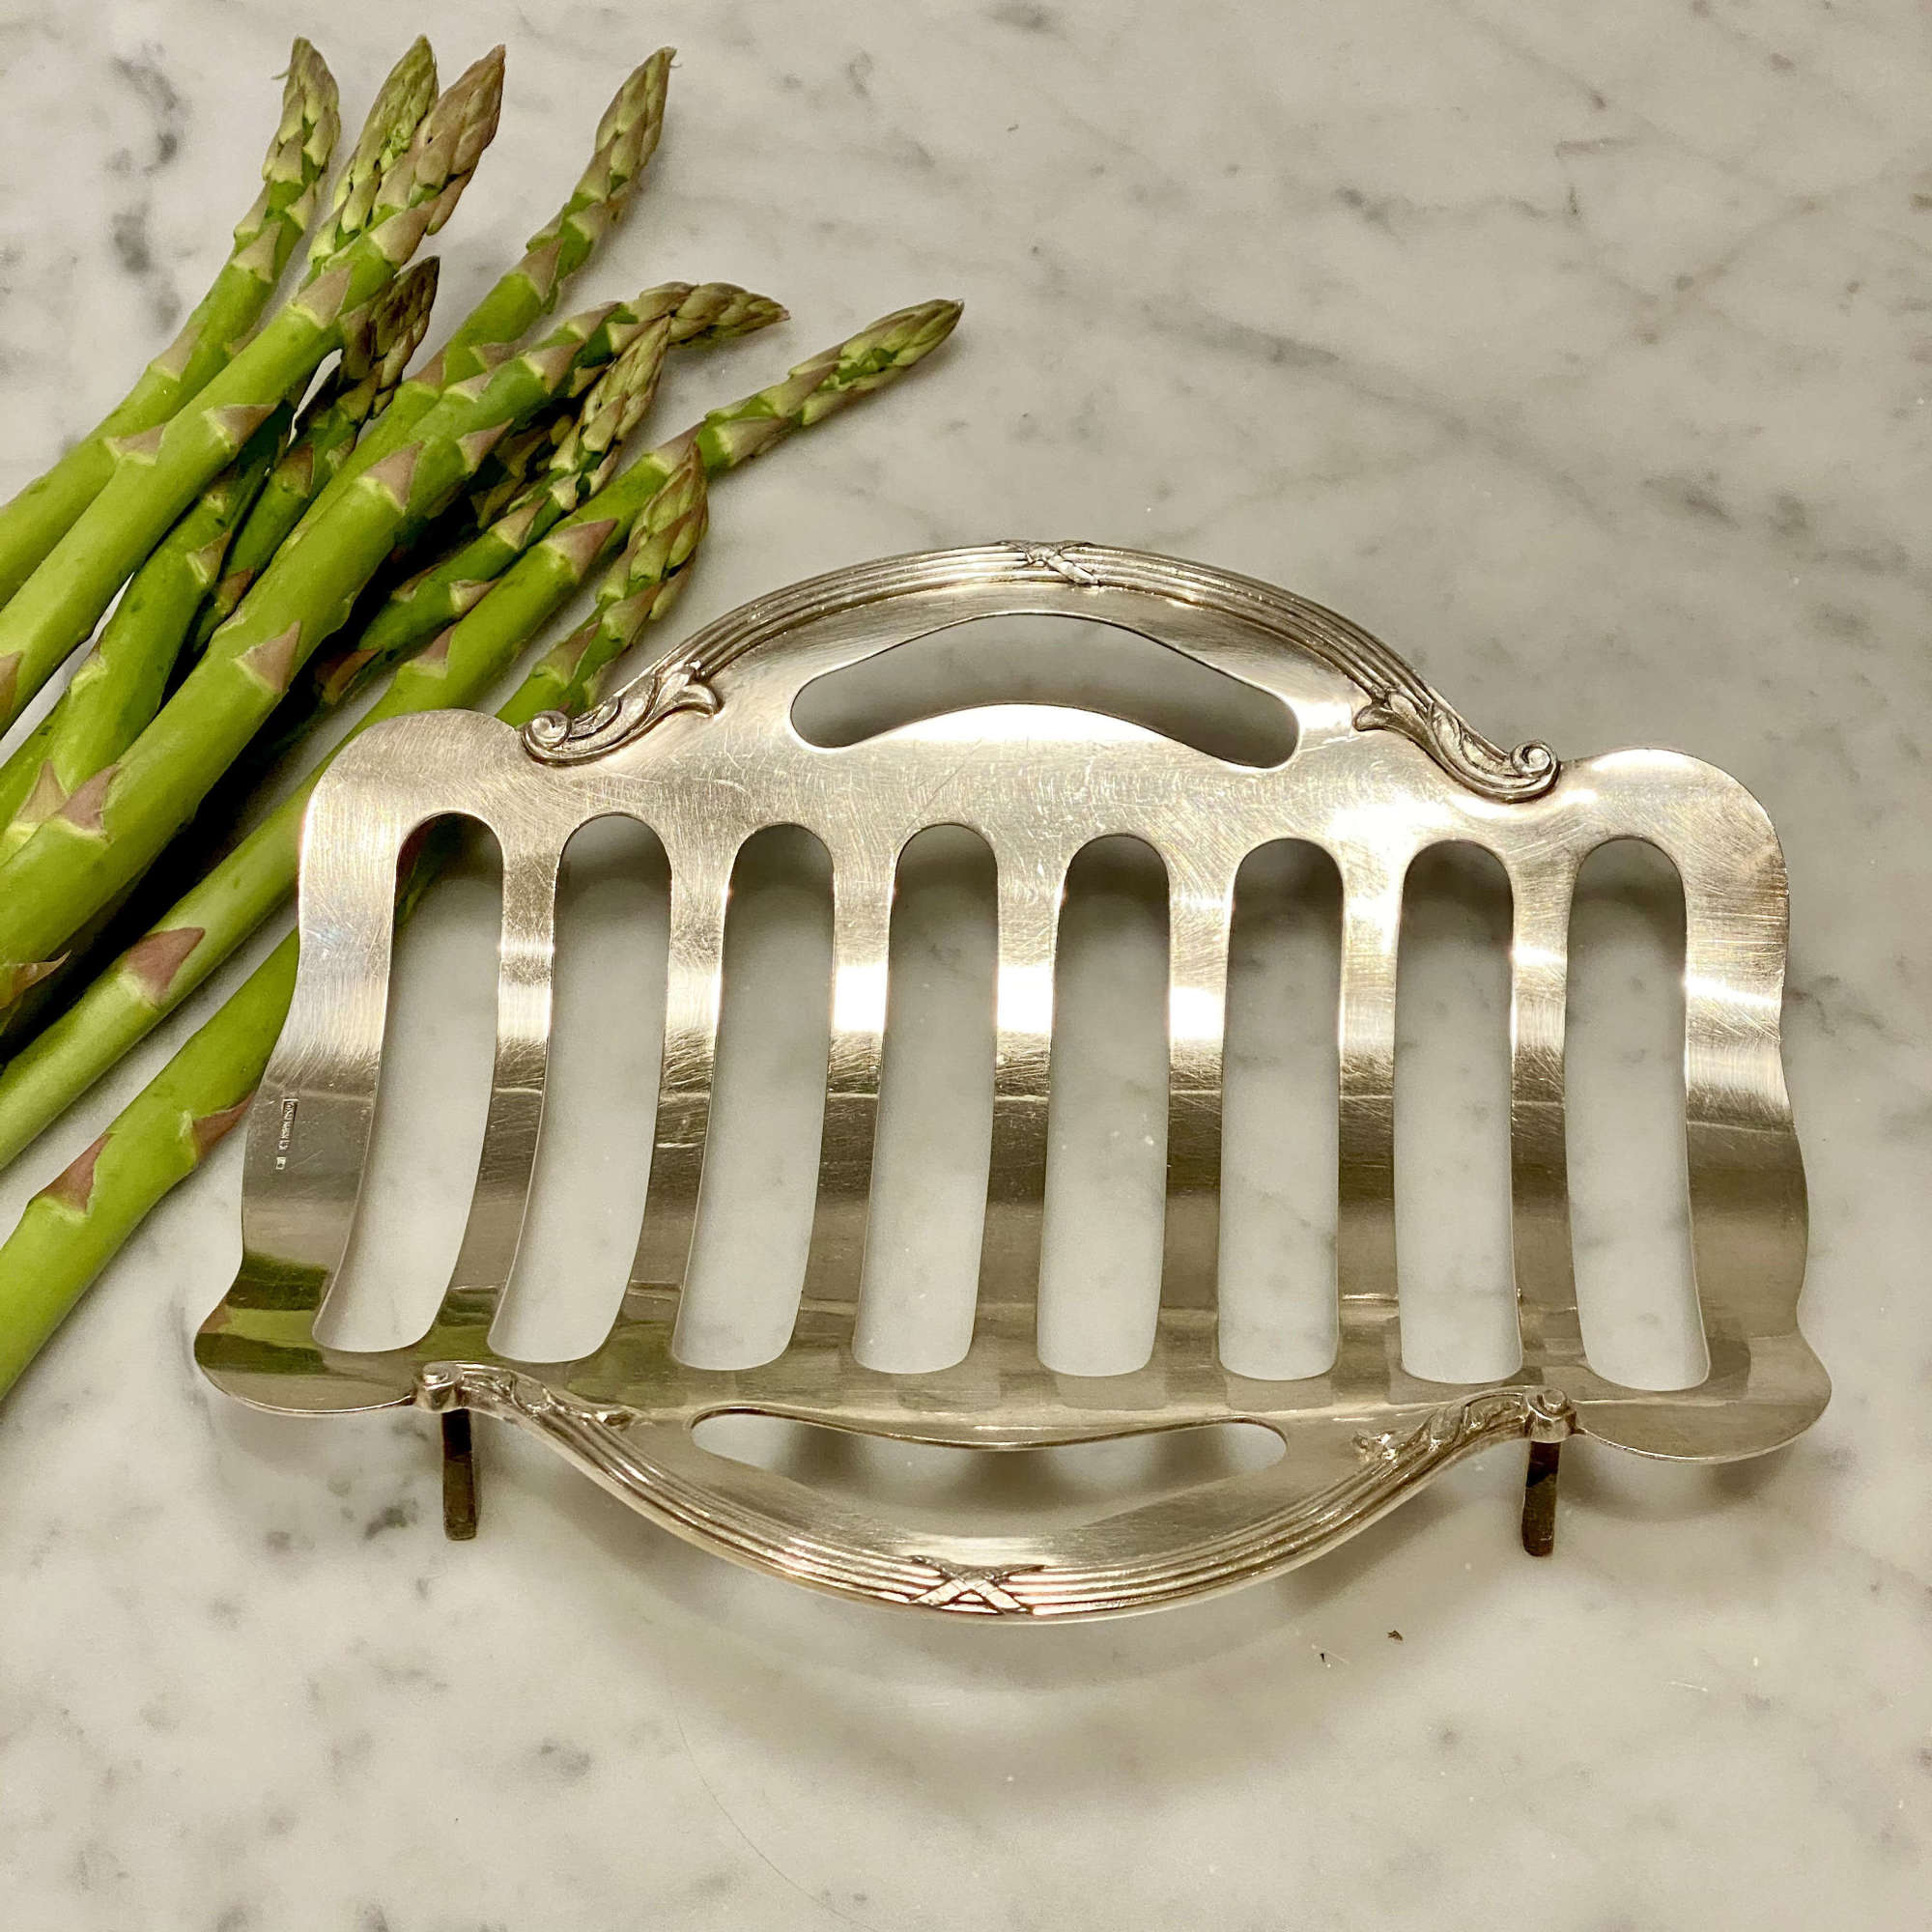 Wiskemann silver plated asparagus cradle serving basket